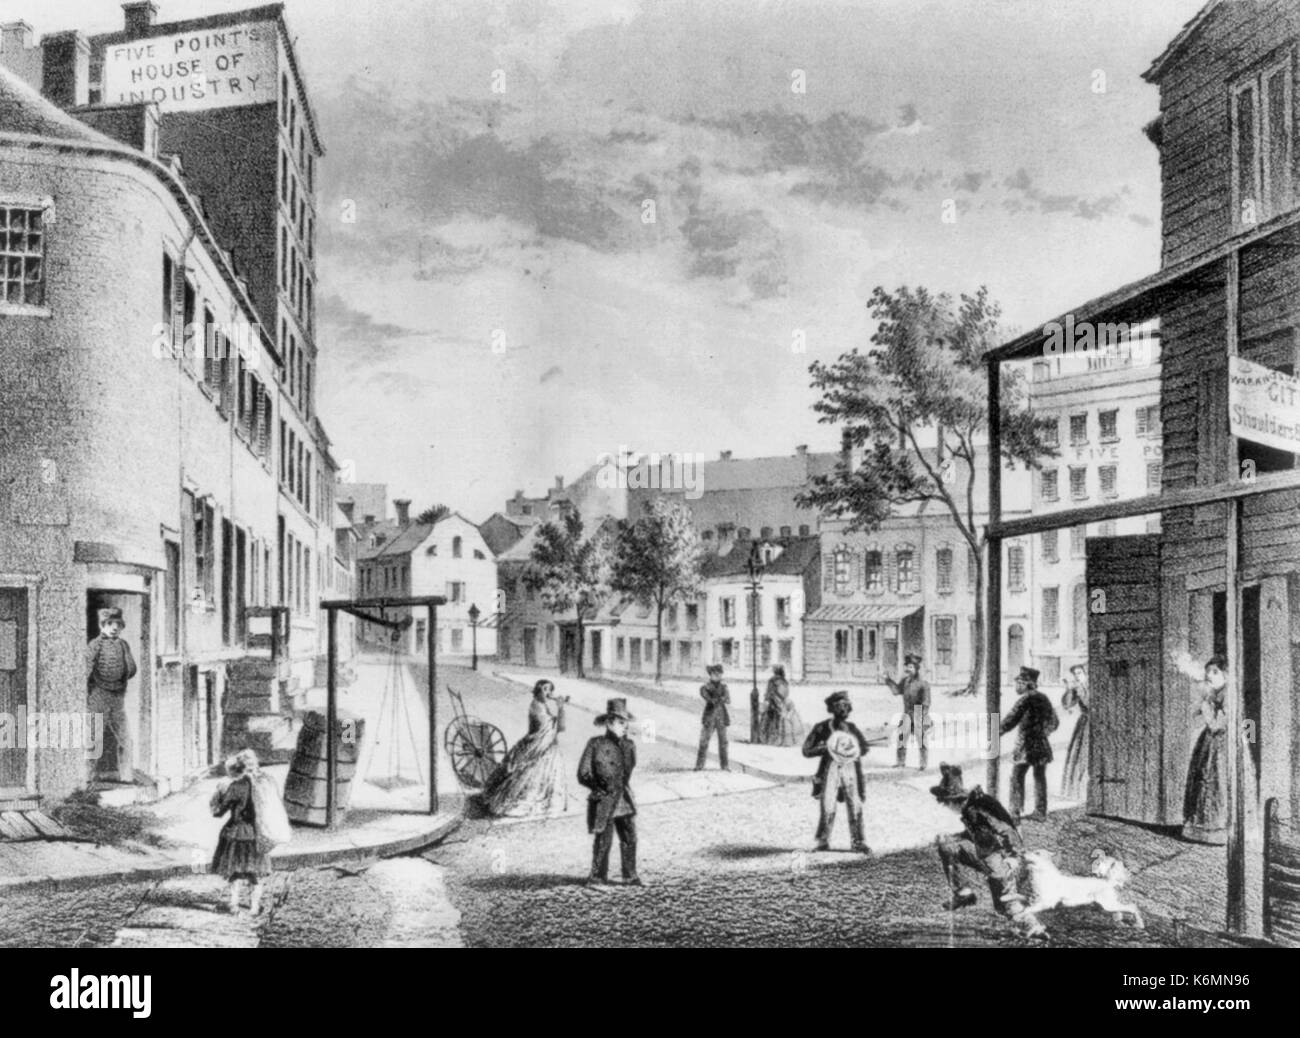 Die fünf Punkte im Jahr 1859. Blick von der Ecke der Wert- und wenig Wasser St. genommen - fünf Punkte, ein Haus der Industrie - New York City. Stockfoto